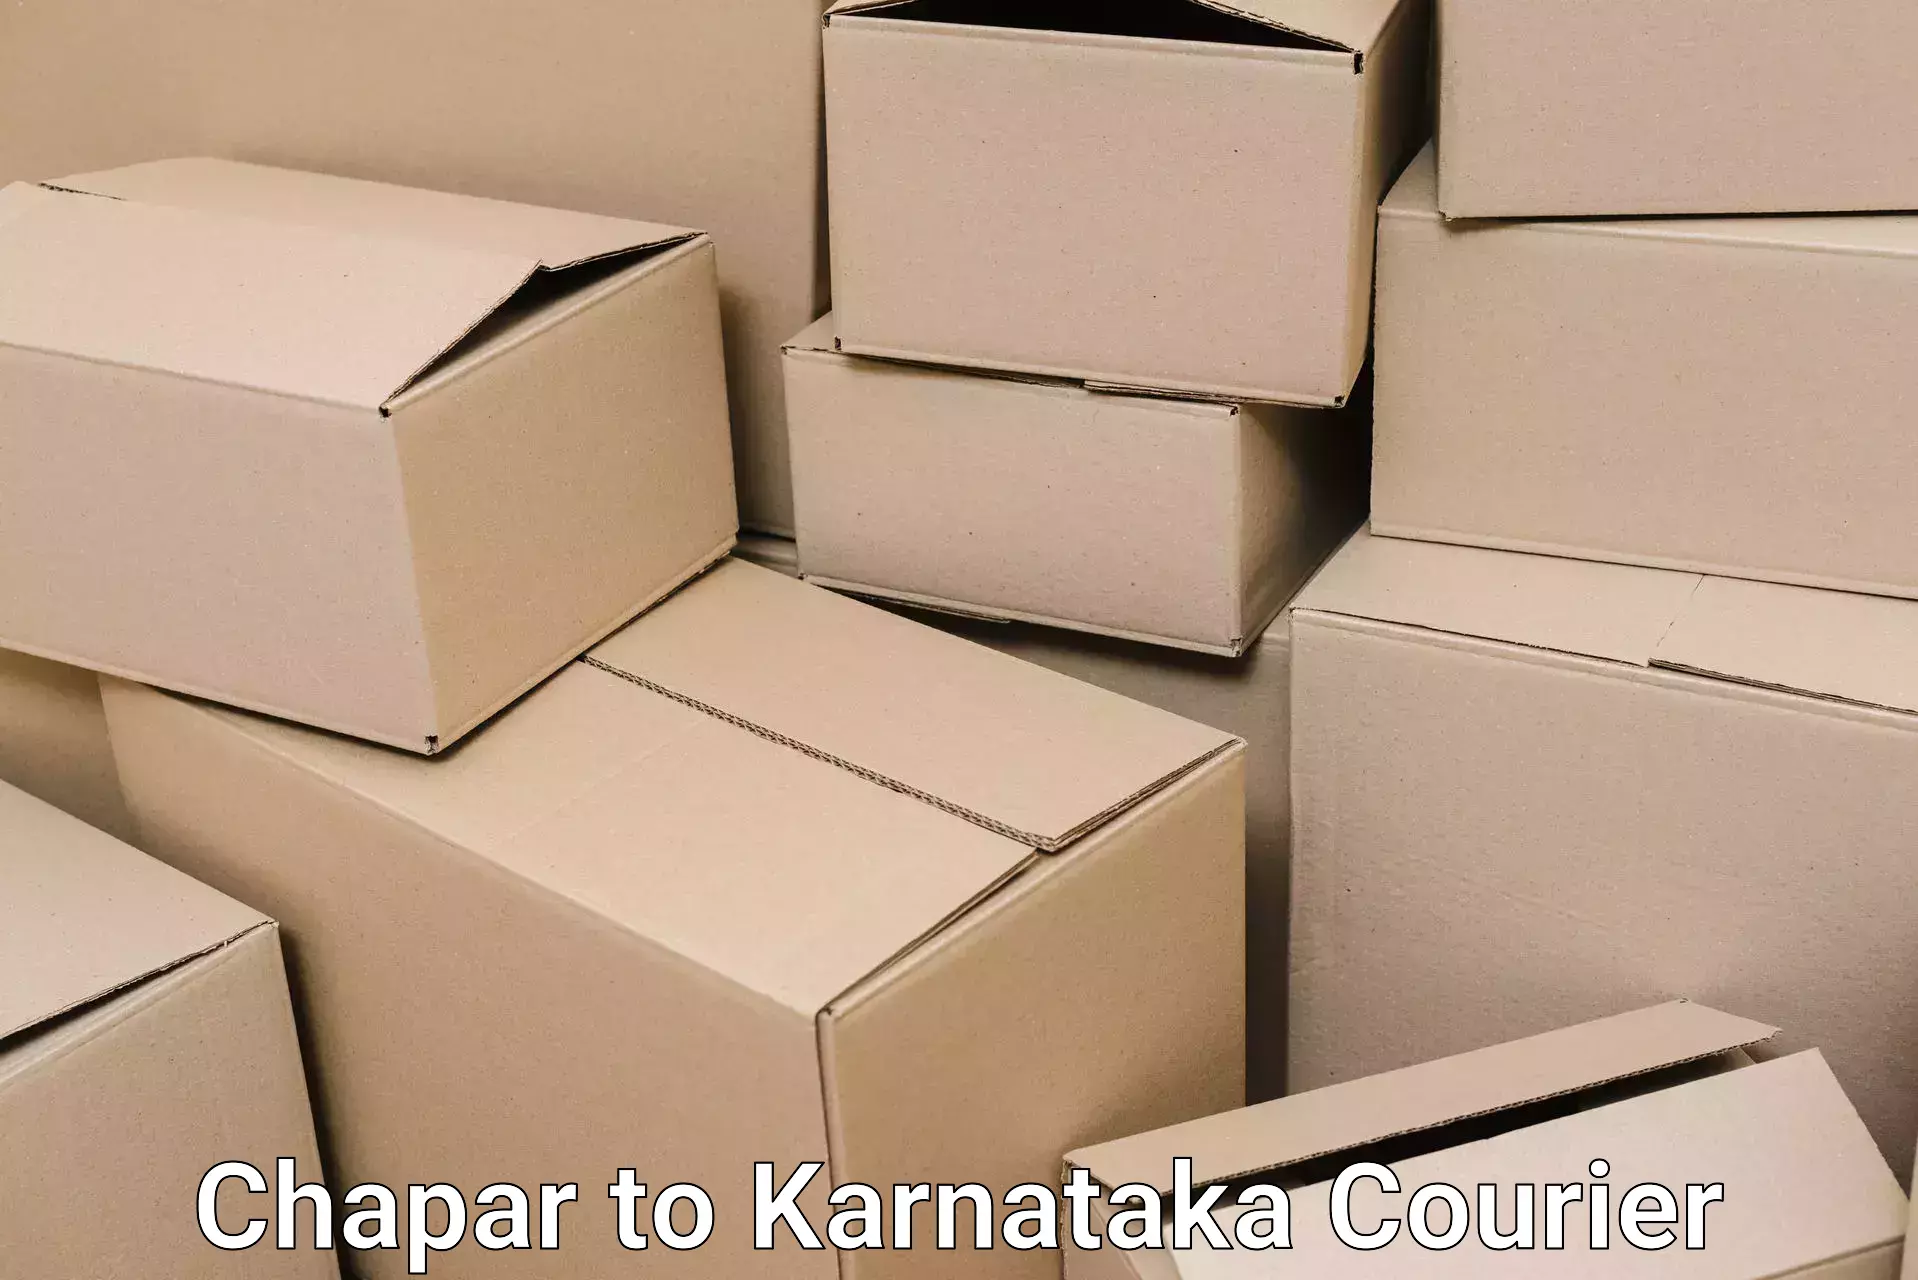 Quality furniture shipping Chapar to Kanjarakatte